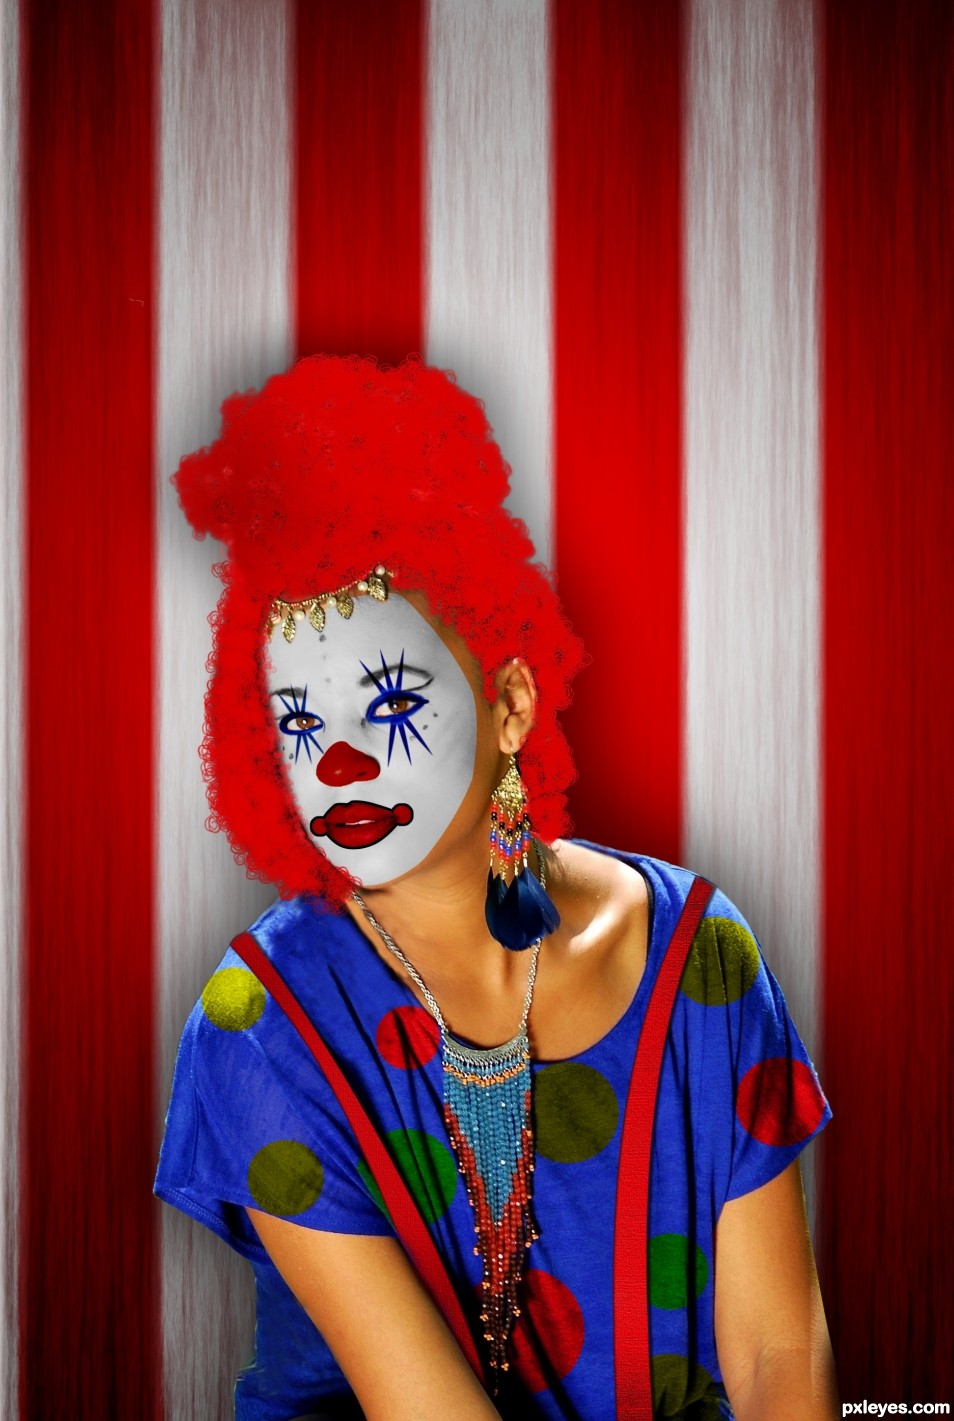 clowny look